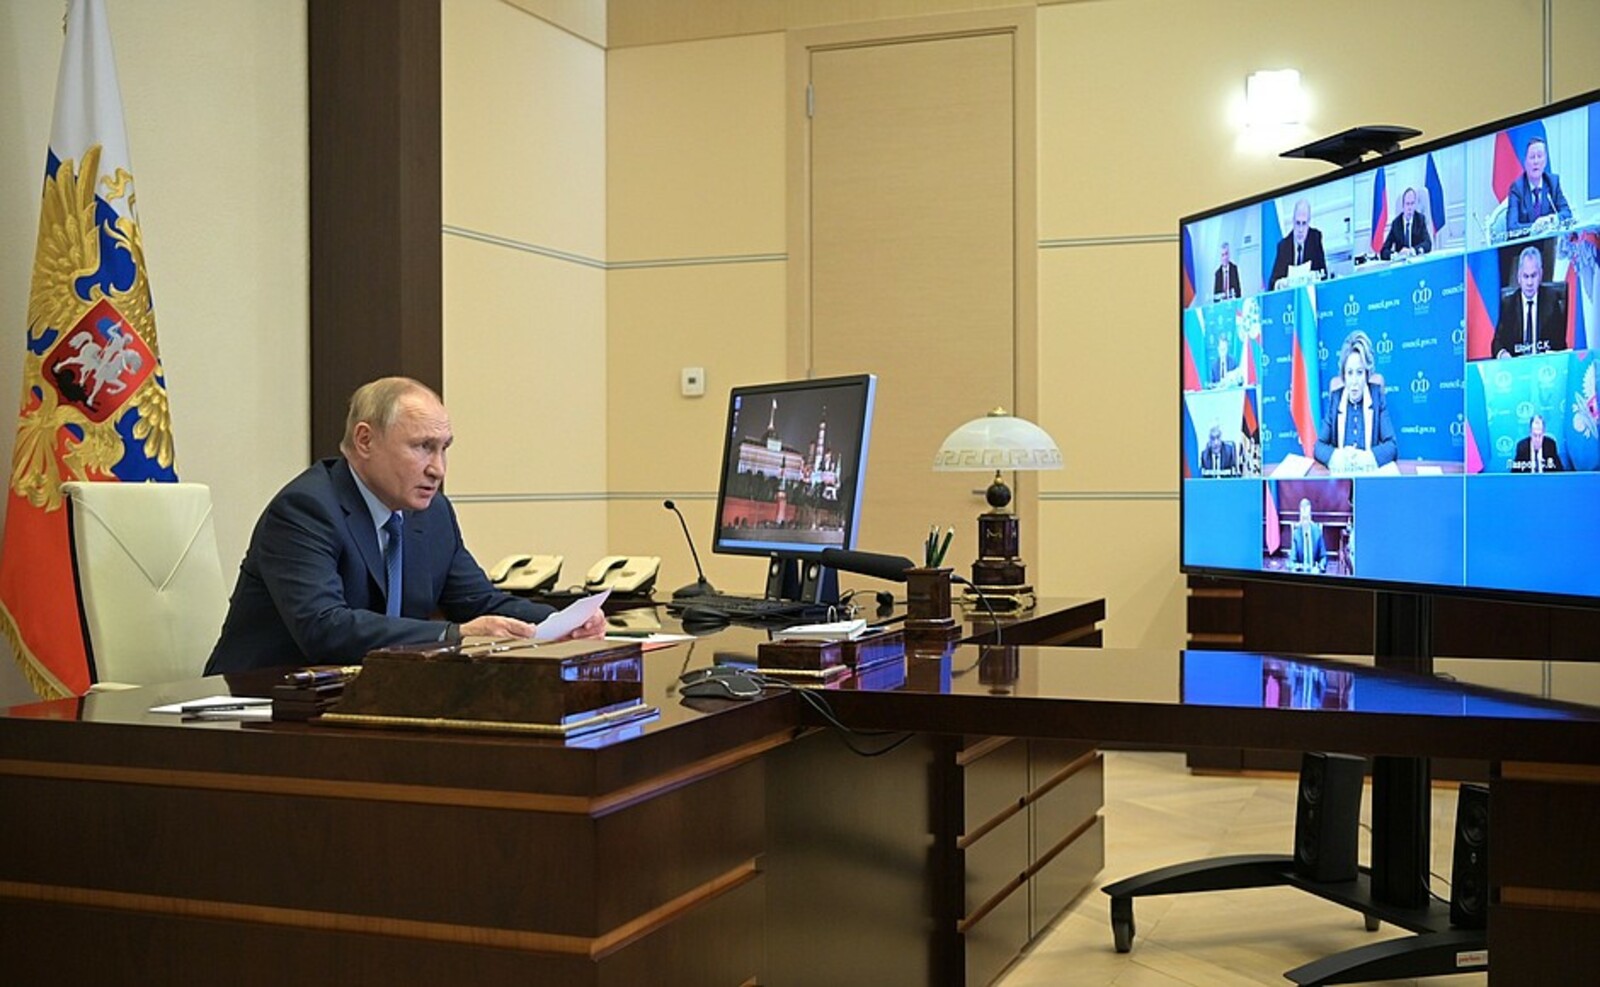 Совещание Владимира Путина с постоянными членами Совета Безопасности